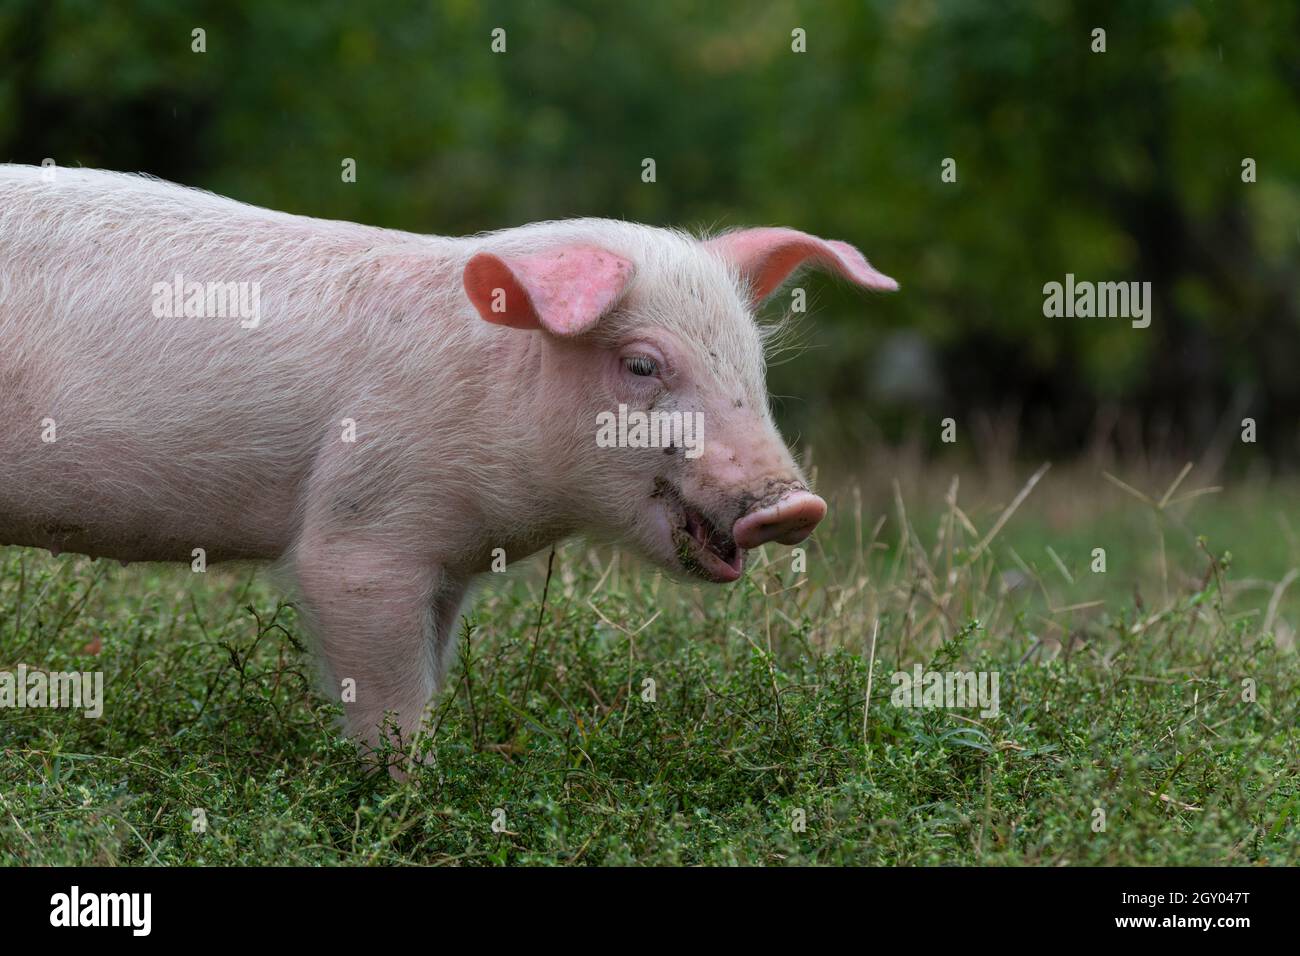 Gros plan d'un jeune cochon rose isolé à poils blancs qui mange de l'herbe sur le pâturage Banque D'Images